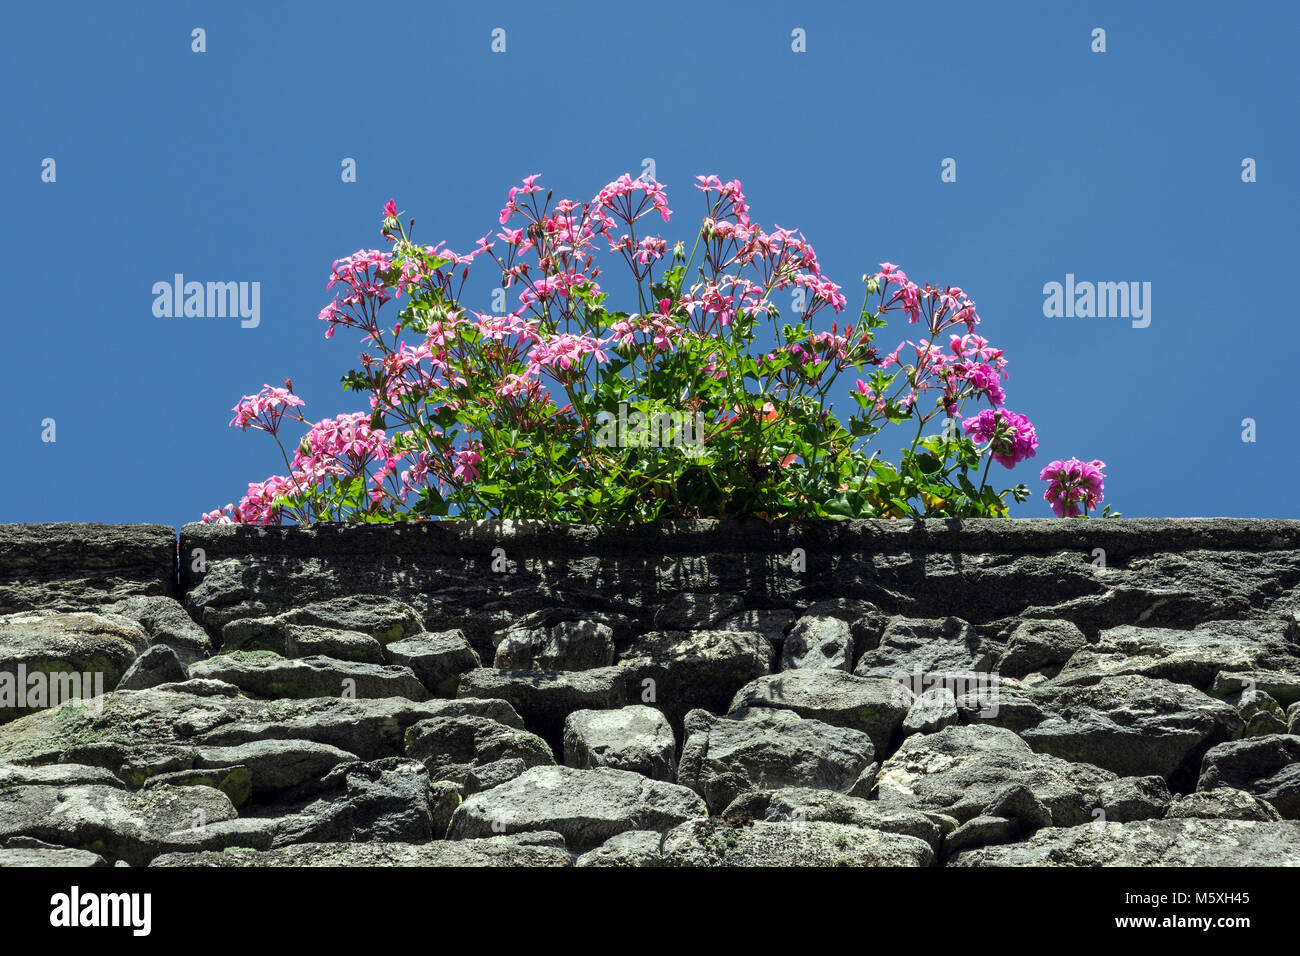 Pelargonium sidoides (Pelargonium sidoides) on stone wall, Comologno, Valle Onsernone, Canton Ticino, Switzerland Stock Photo